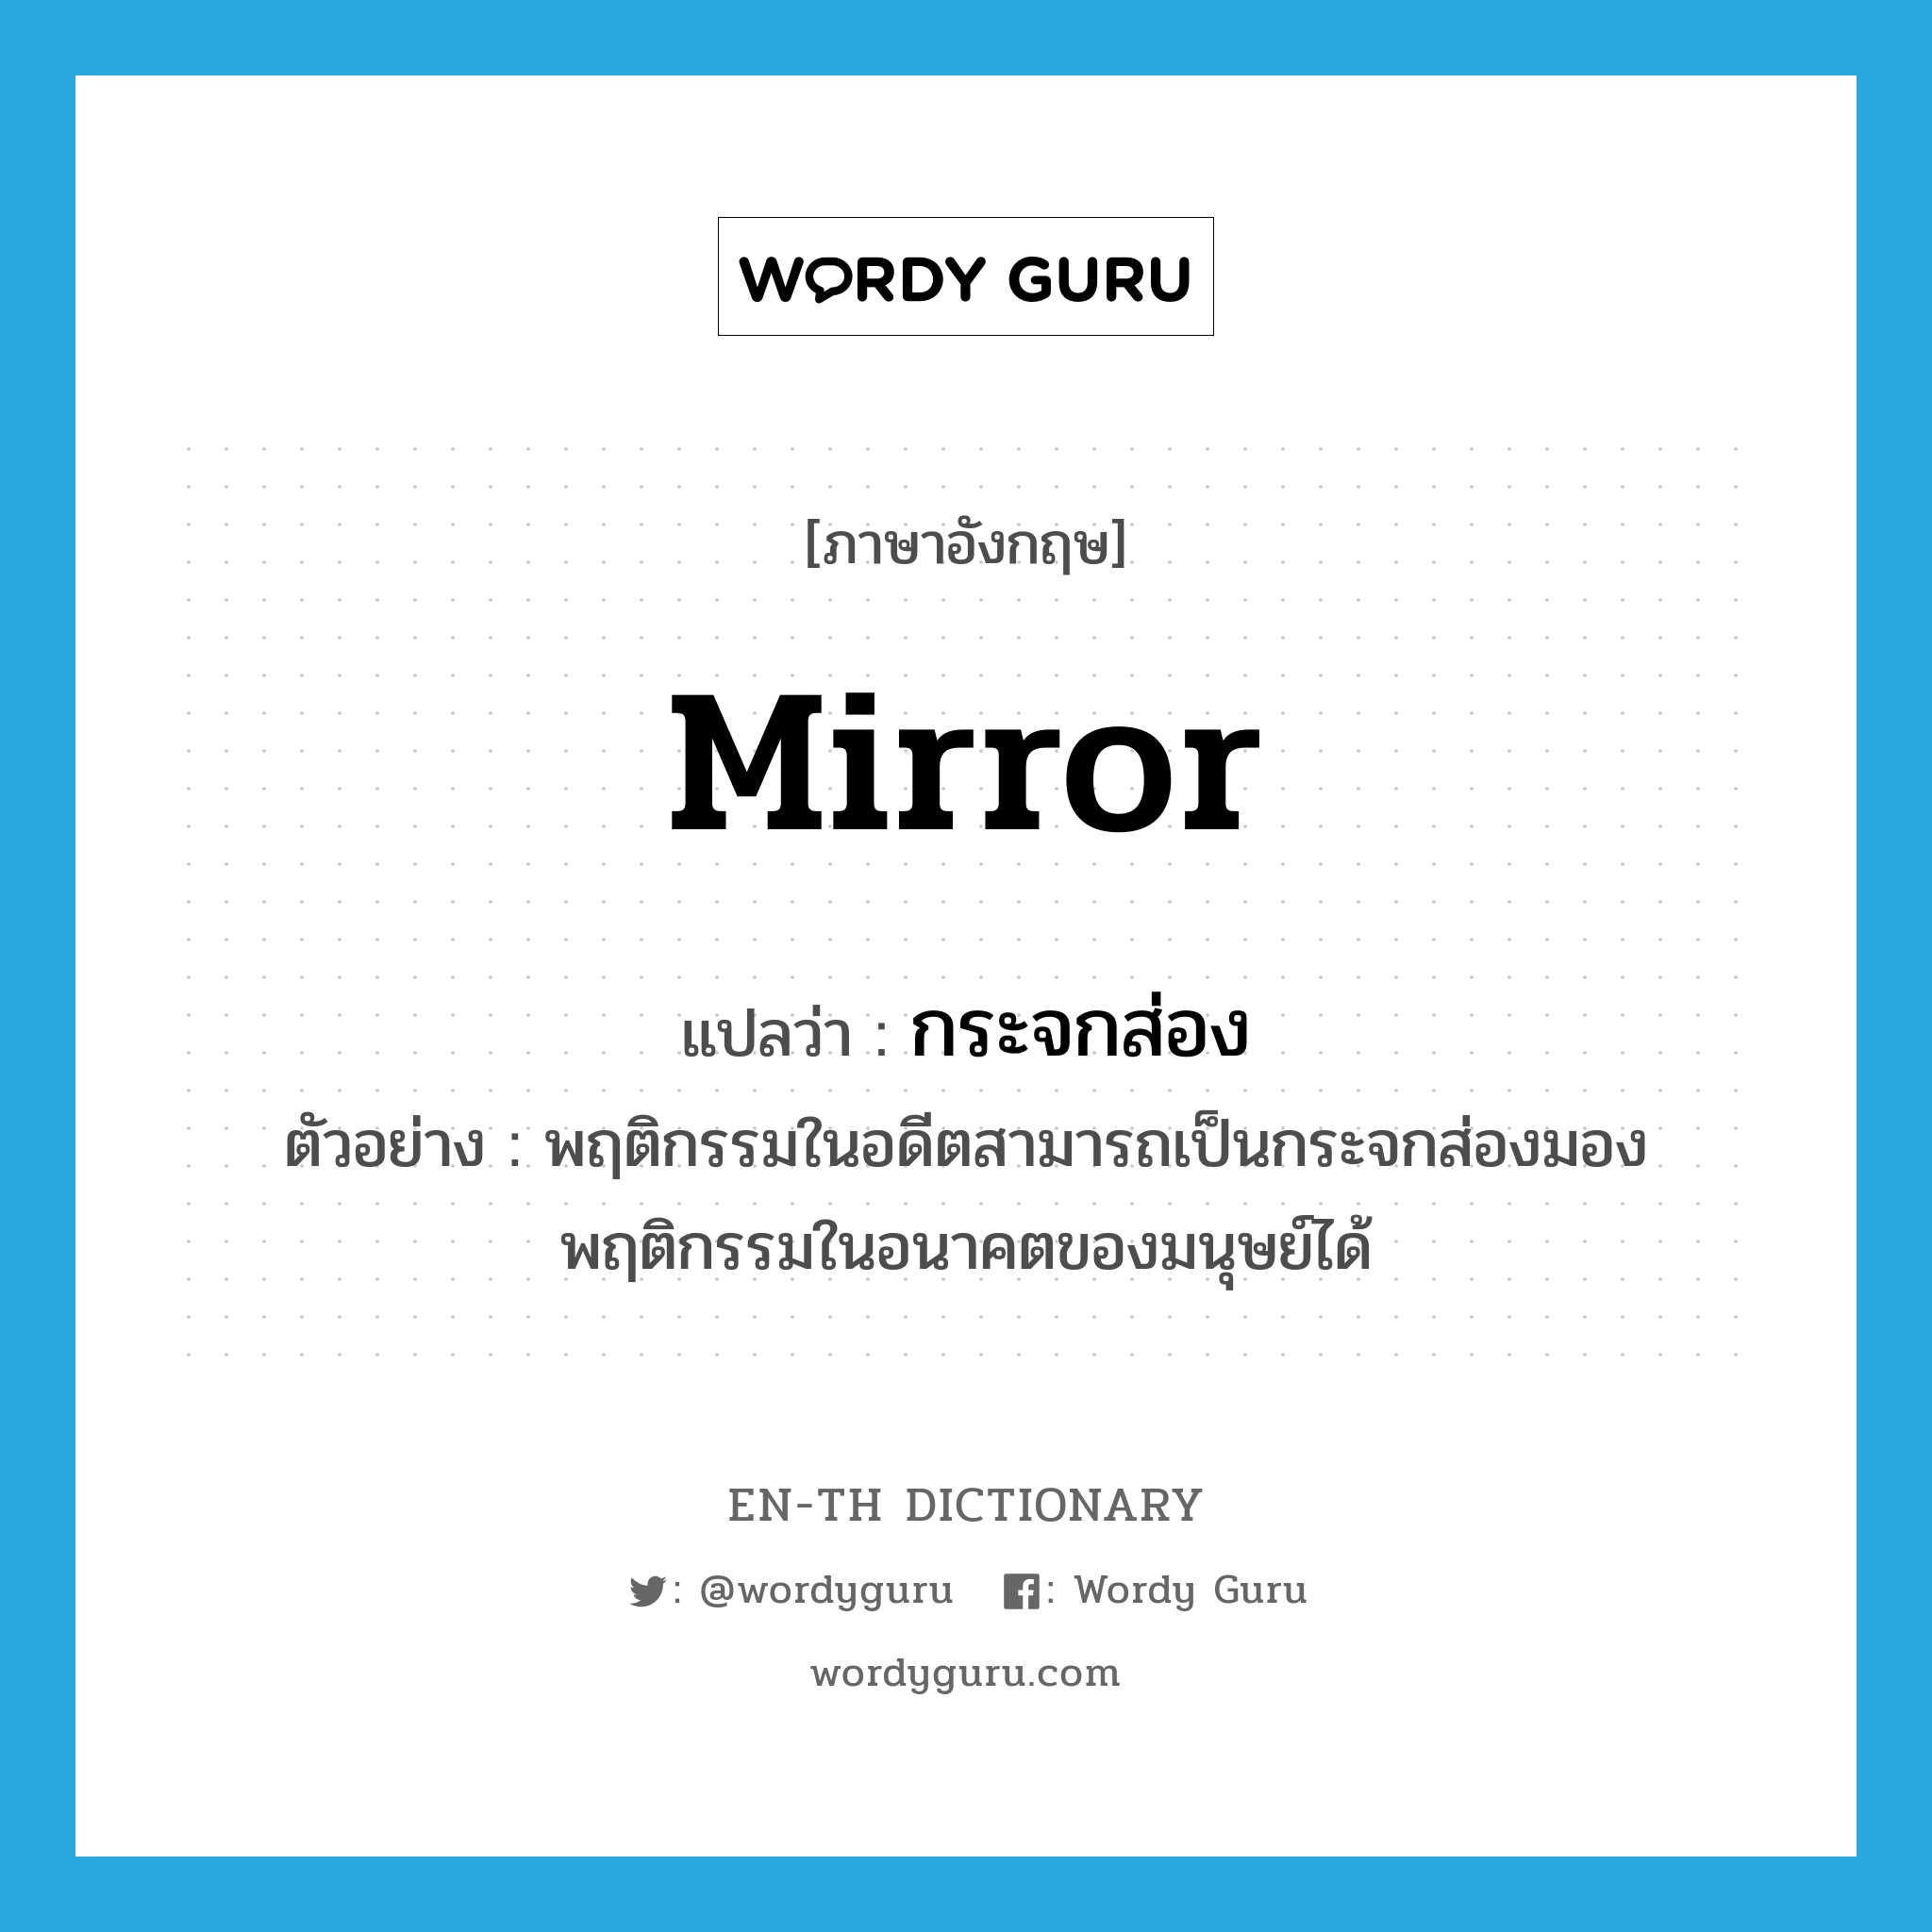 mirror แปลว่า?, คำศัพท์ภาษาอังกฤษ mirror แปลว่า กระจกส่อง ประเภท N ตัวอย่าง พฤติกรรมในอดีตสามารถเป็นกระจกส่องมองพฤติกรรมในอนาคตของมนุษย์ได้ หมวด N